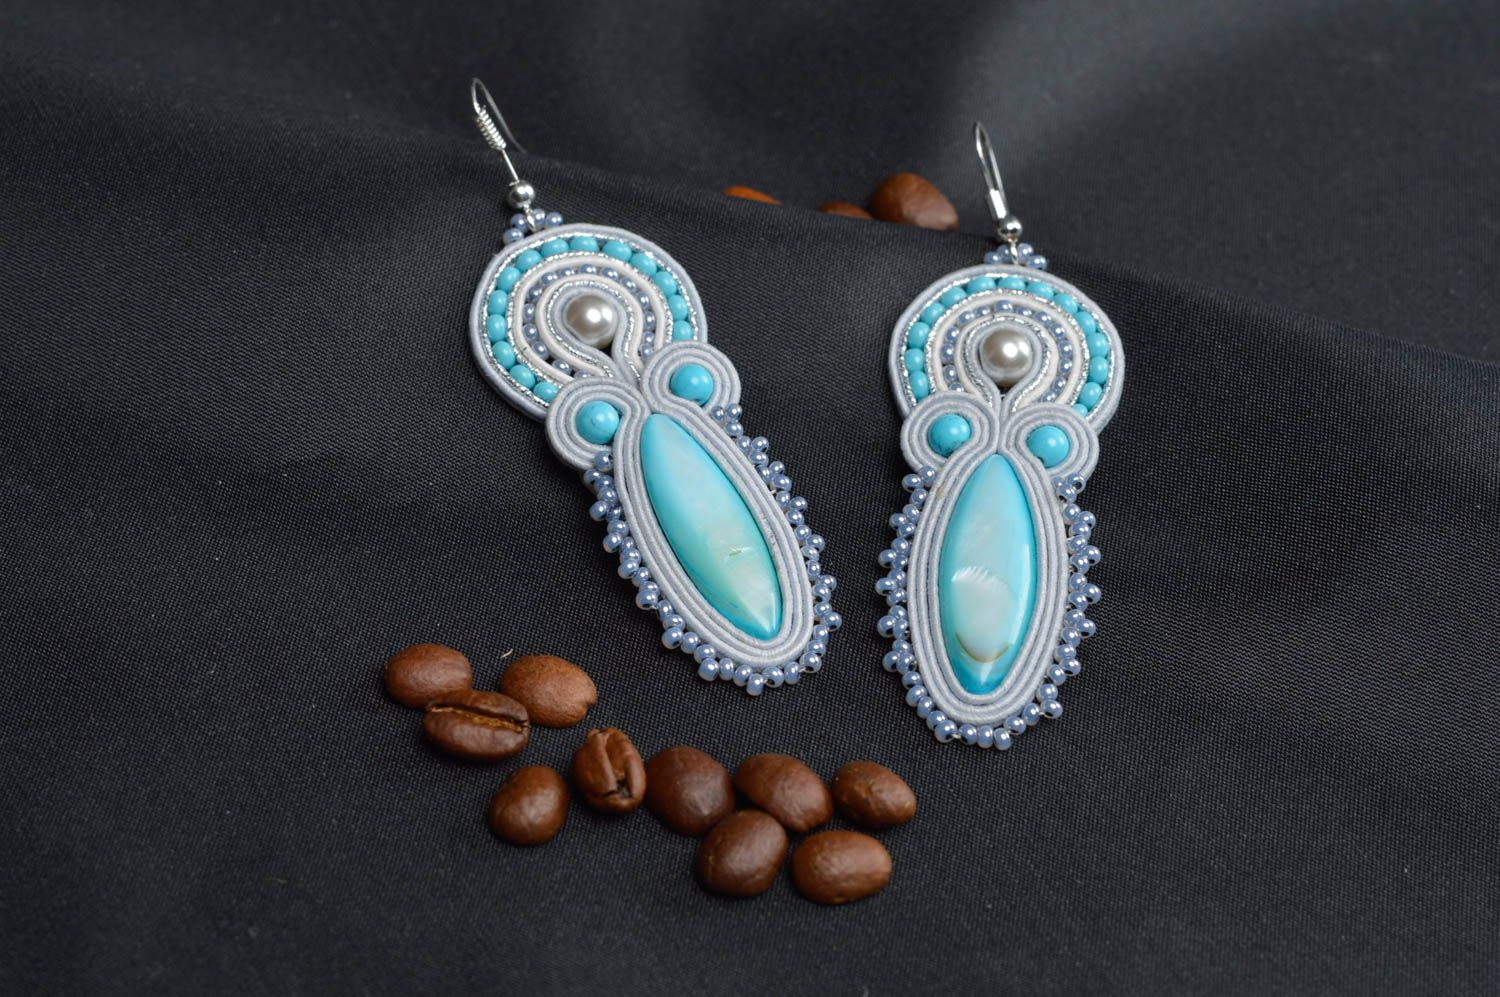 Earrings for women handmade earrings soutache jewelry gift ideas for women photo 1